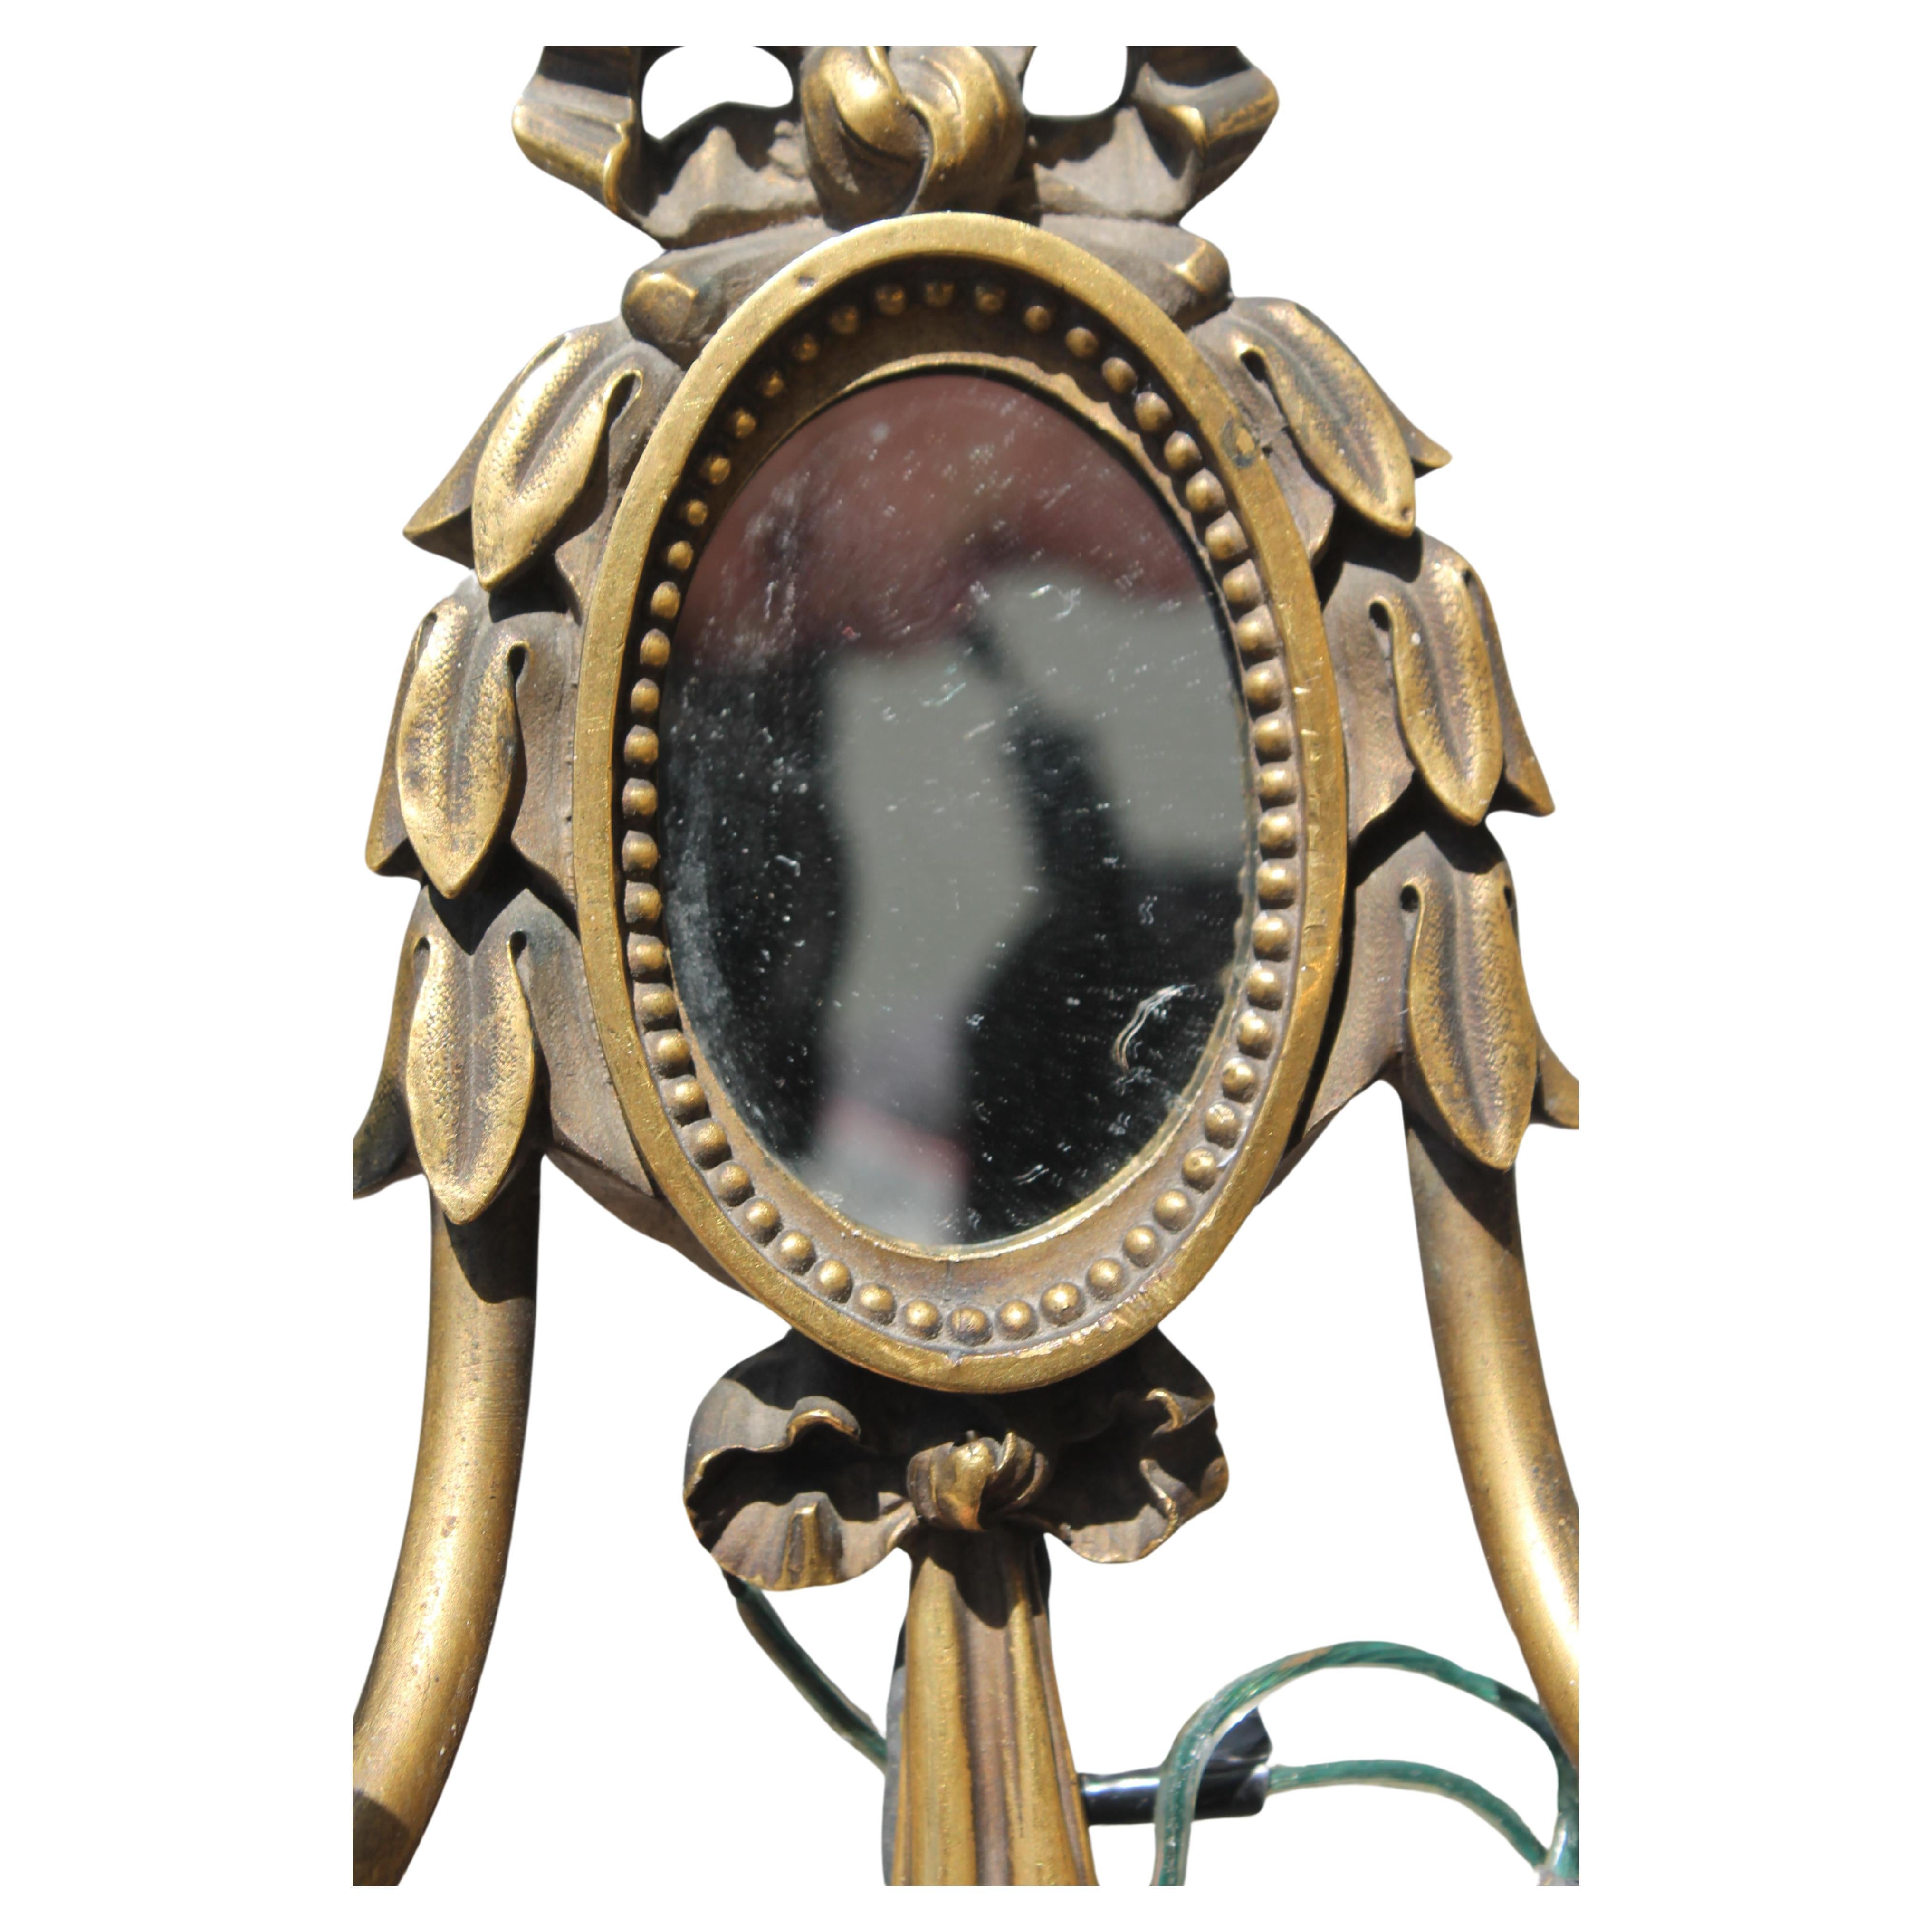 c1913 Paar E.F. Caldwell Louis XVI Stil Bronze Drape mit Spiegel Center Panel Wandleuchter. Sehr hohe Qualität. Ich habe mehrere Caldwell-Stücke bei einem Fachhändler für hochwertige Beleuchtung gekauft.